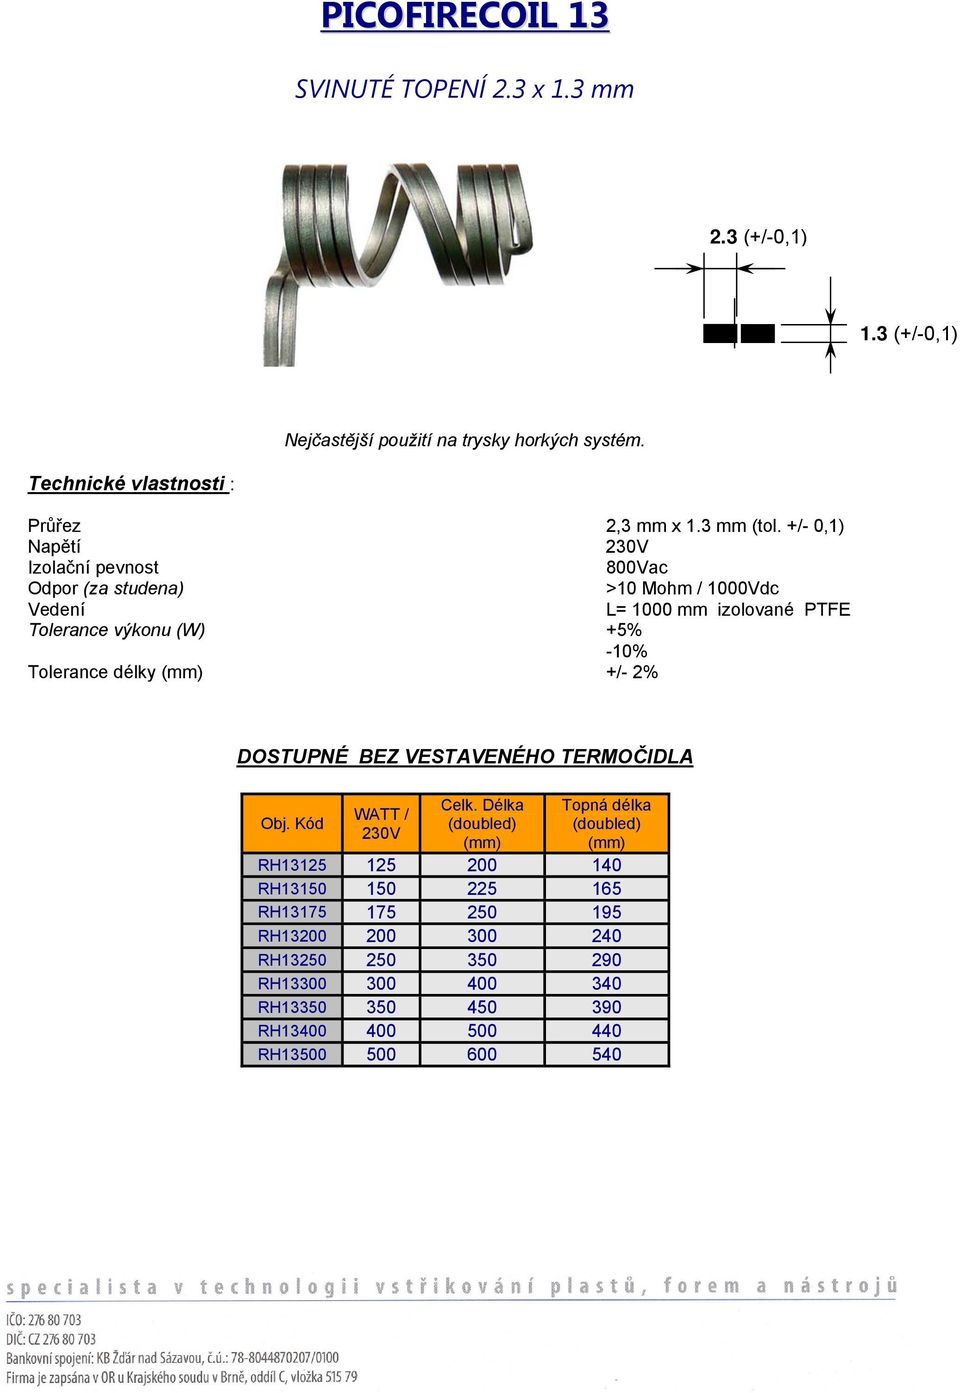 +/- 0,1) Napětí Izolační pevnost 800Vac Odpor (za studena) >10 Mohm / 1000Vdc Vedení L= 1000 mm izolované PTFE Tolerance výkonu (W) +5% -10% Tolerance